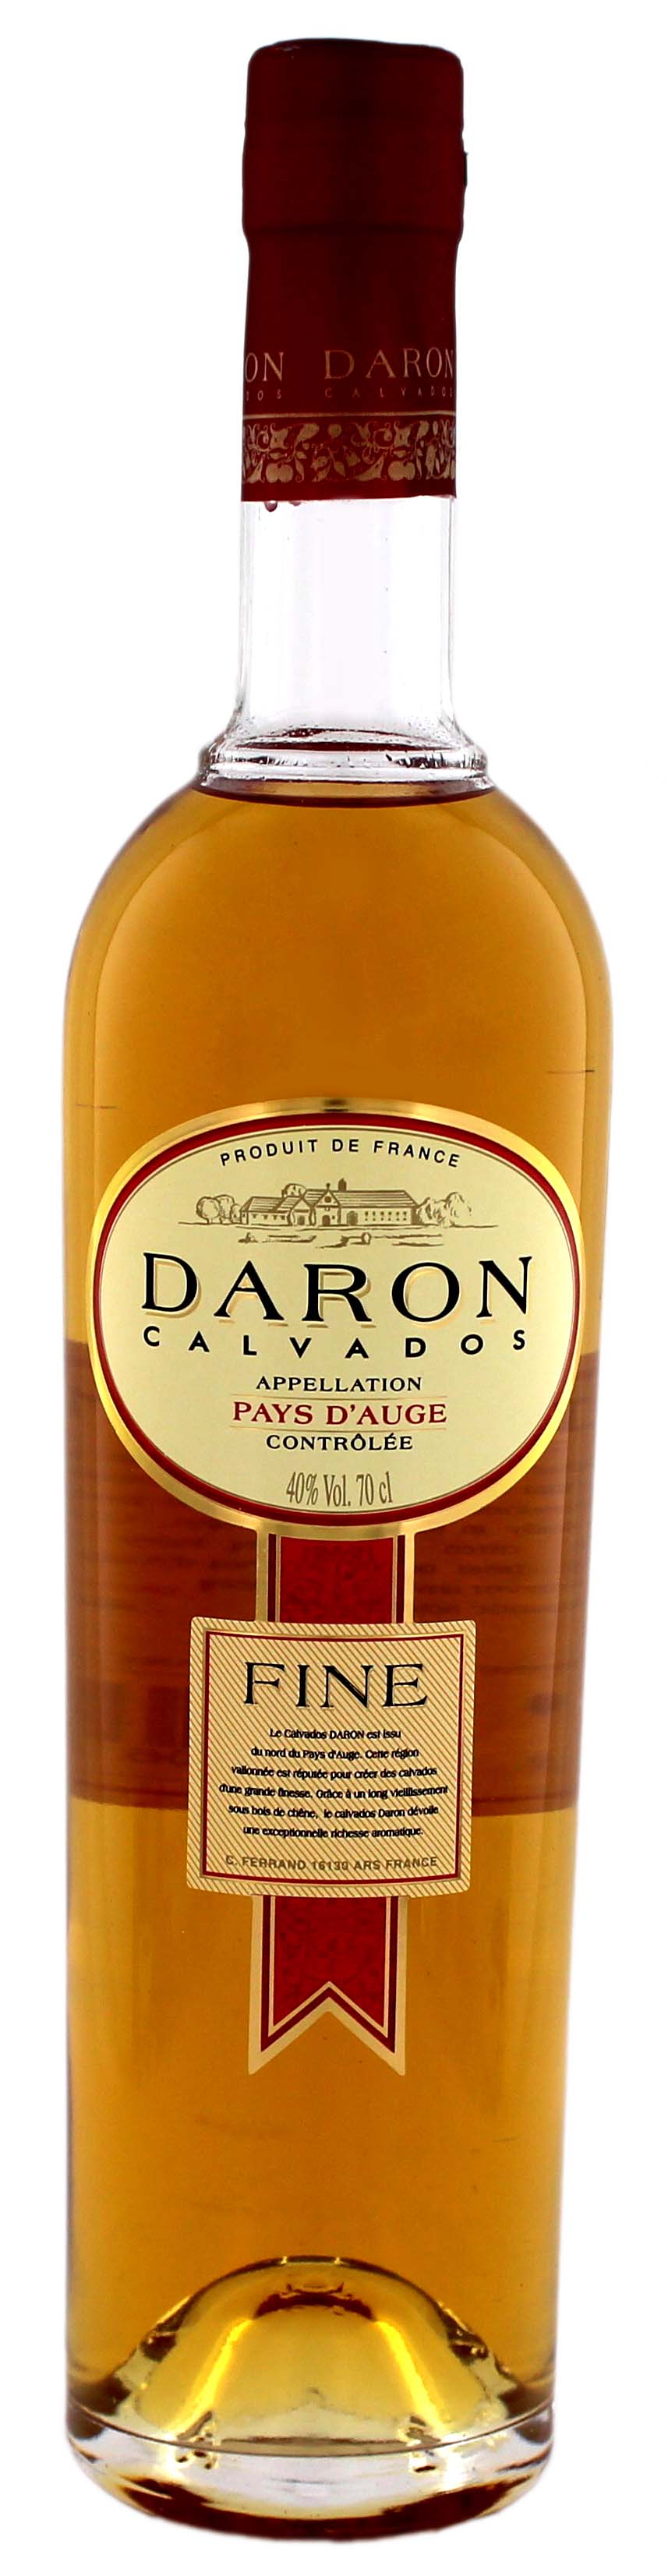 Daron Calvados Fine jetzt kaufen! Calvados Online Shop - Spirituosen  günstig online bestellen